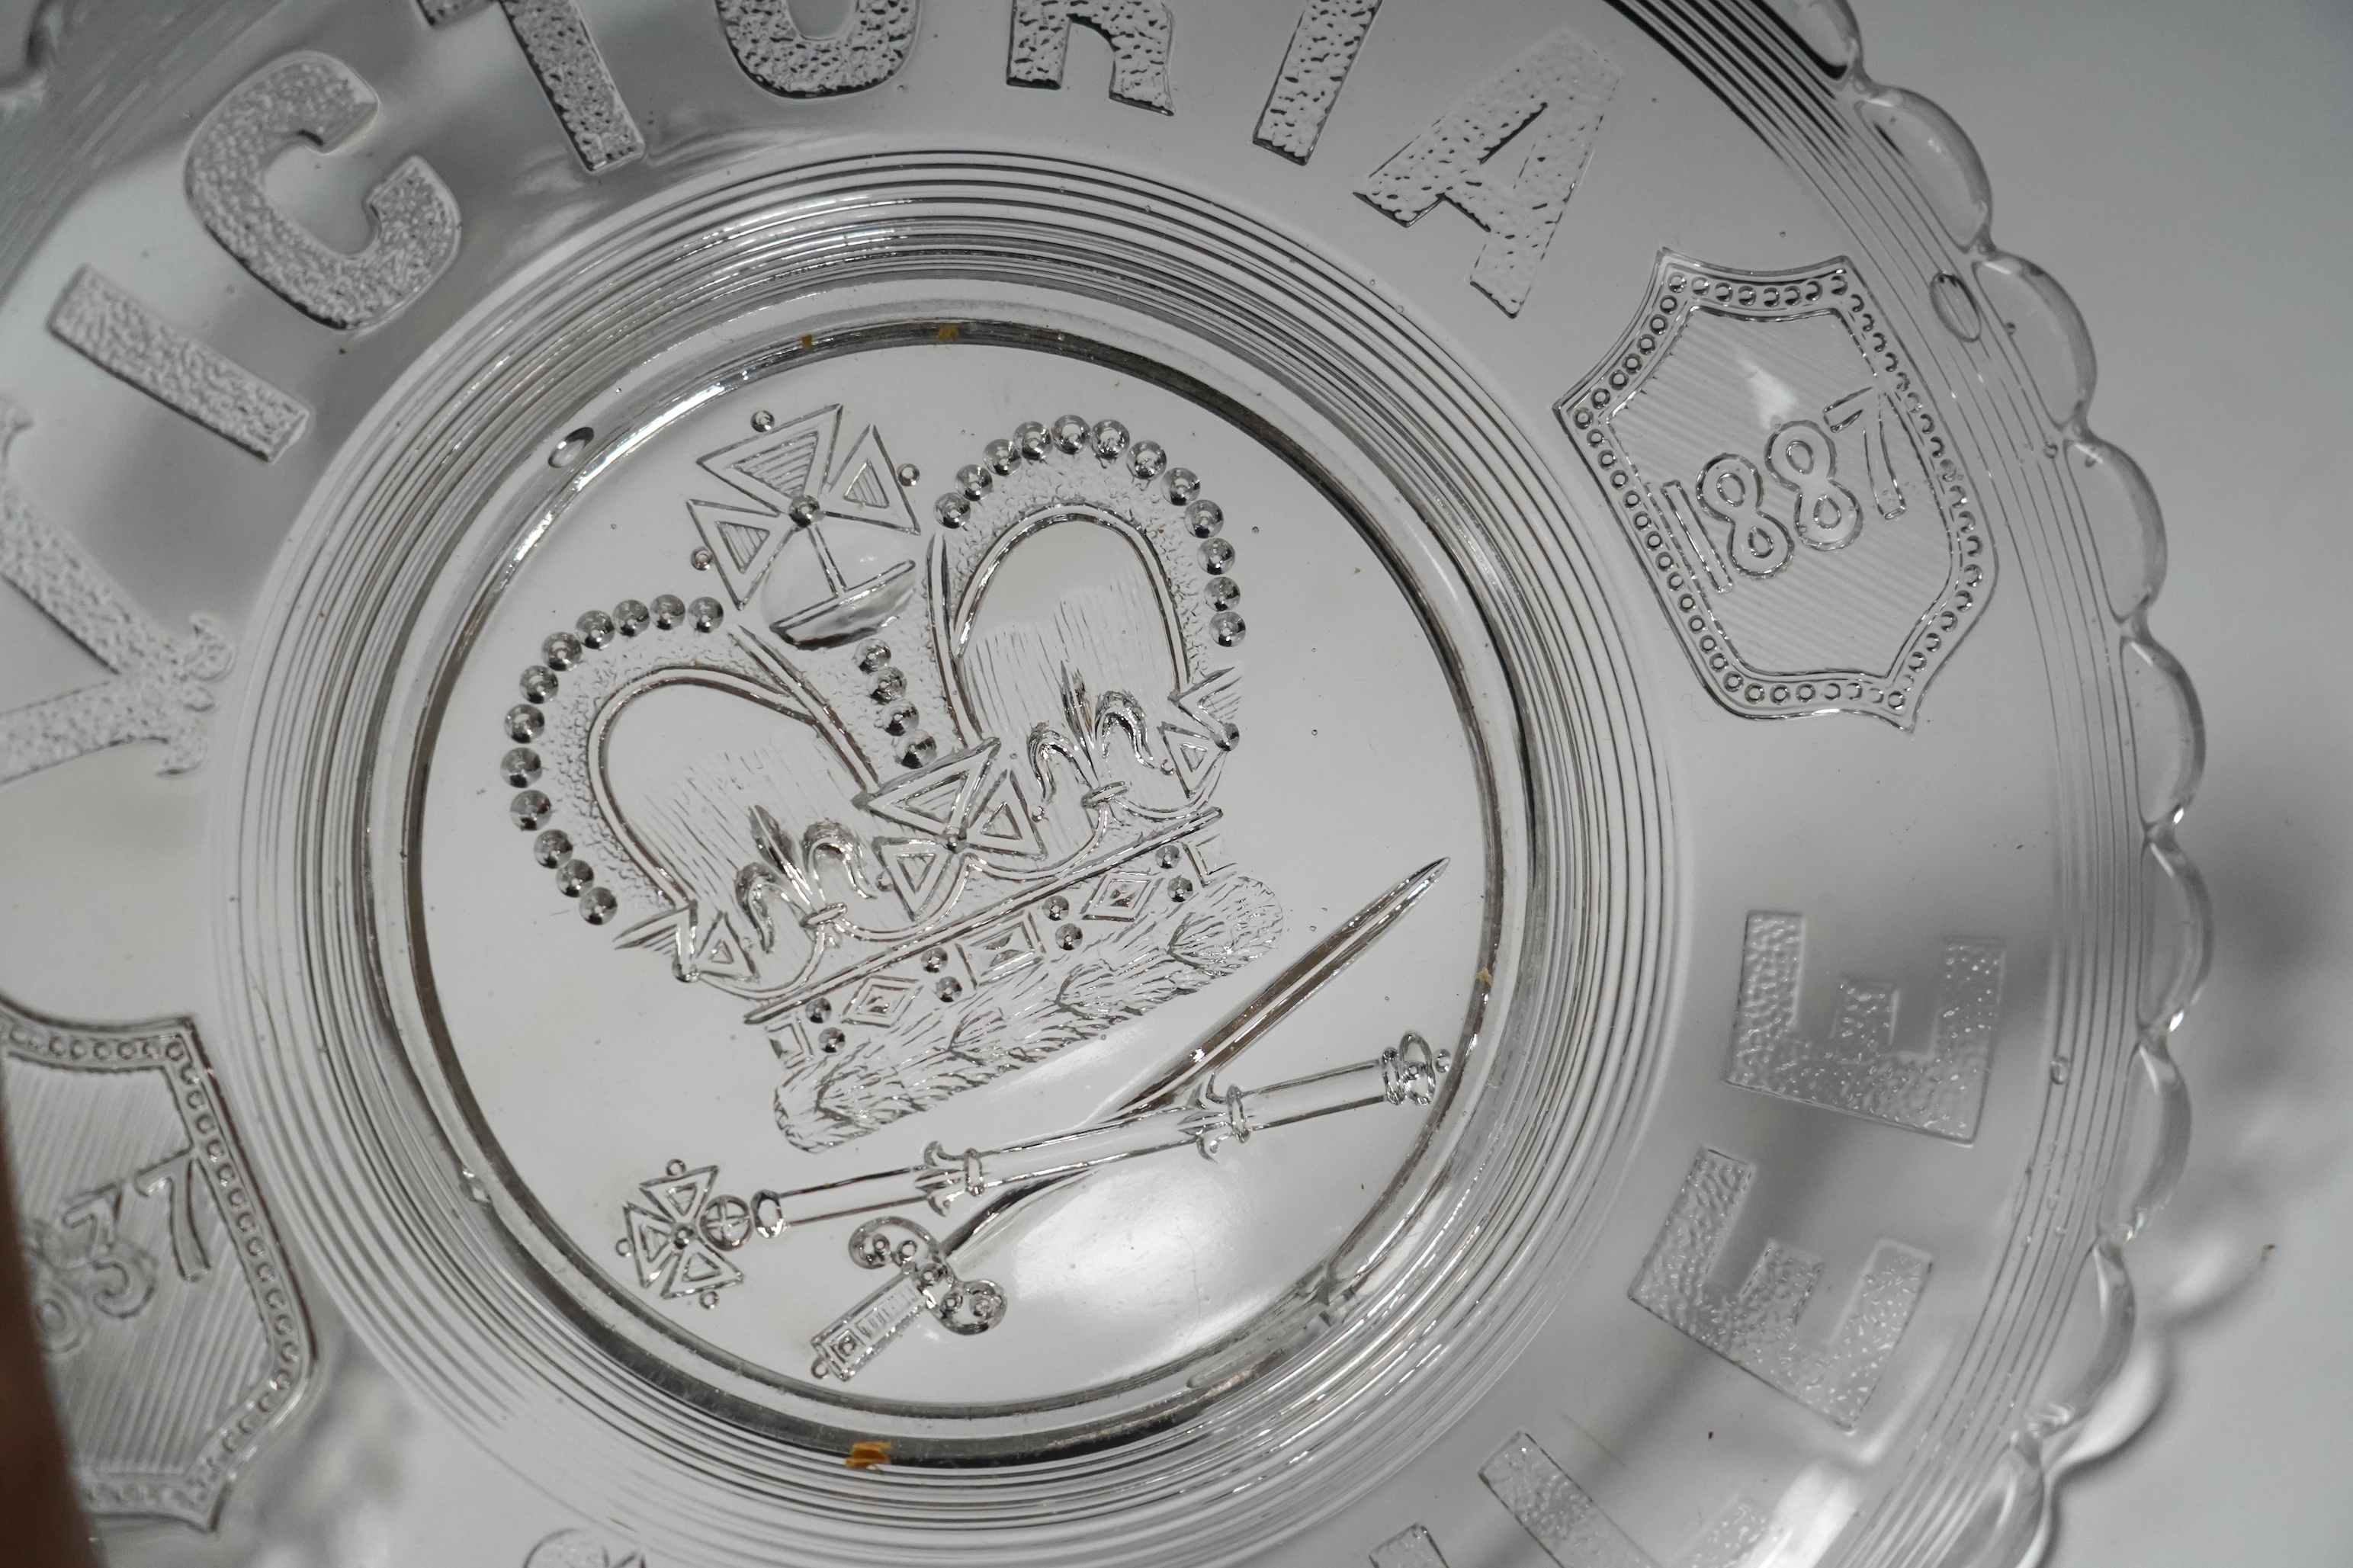 Seven press moulded glass commemorative items celebrating Queen Victoria's Diamond Jubilee